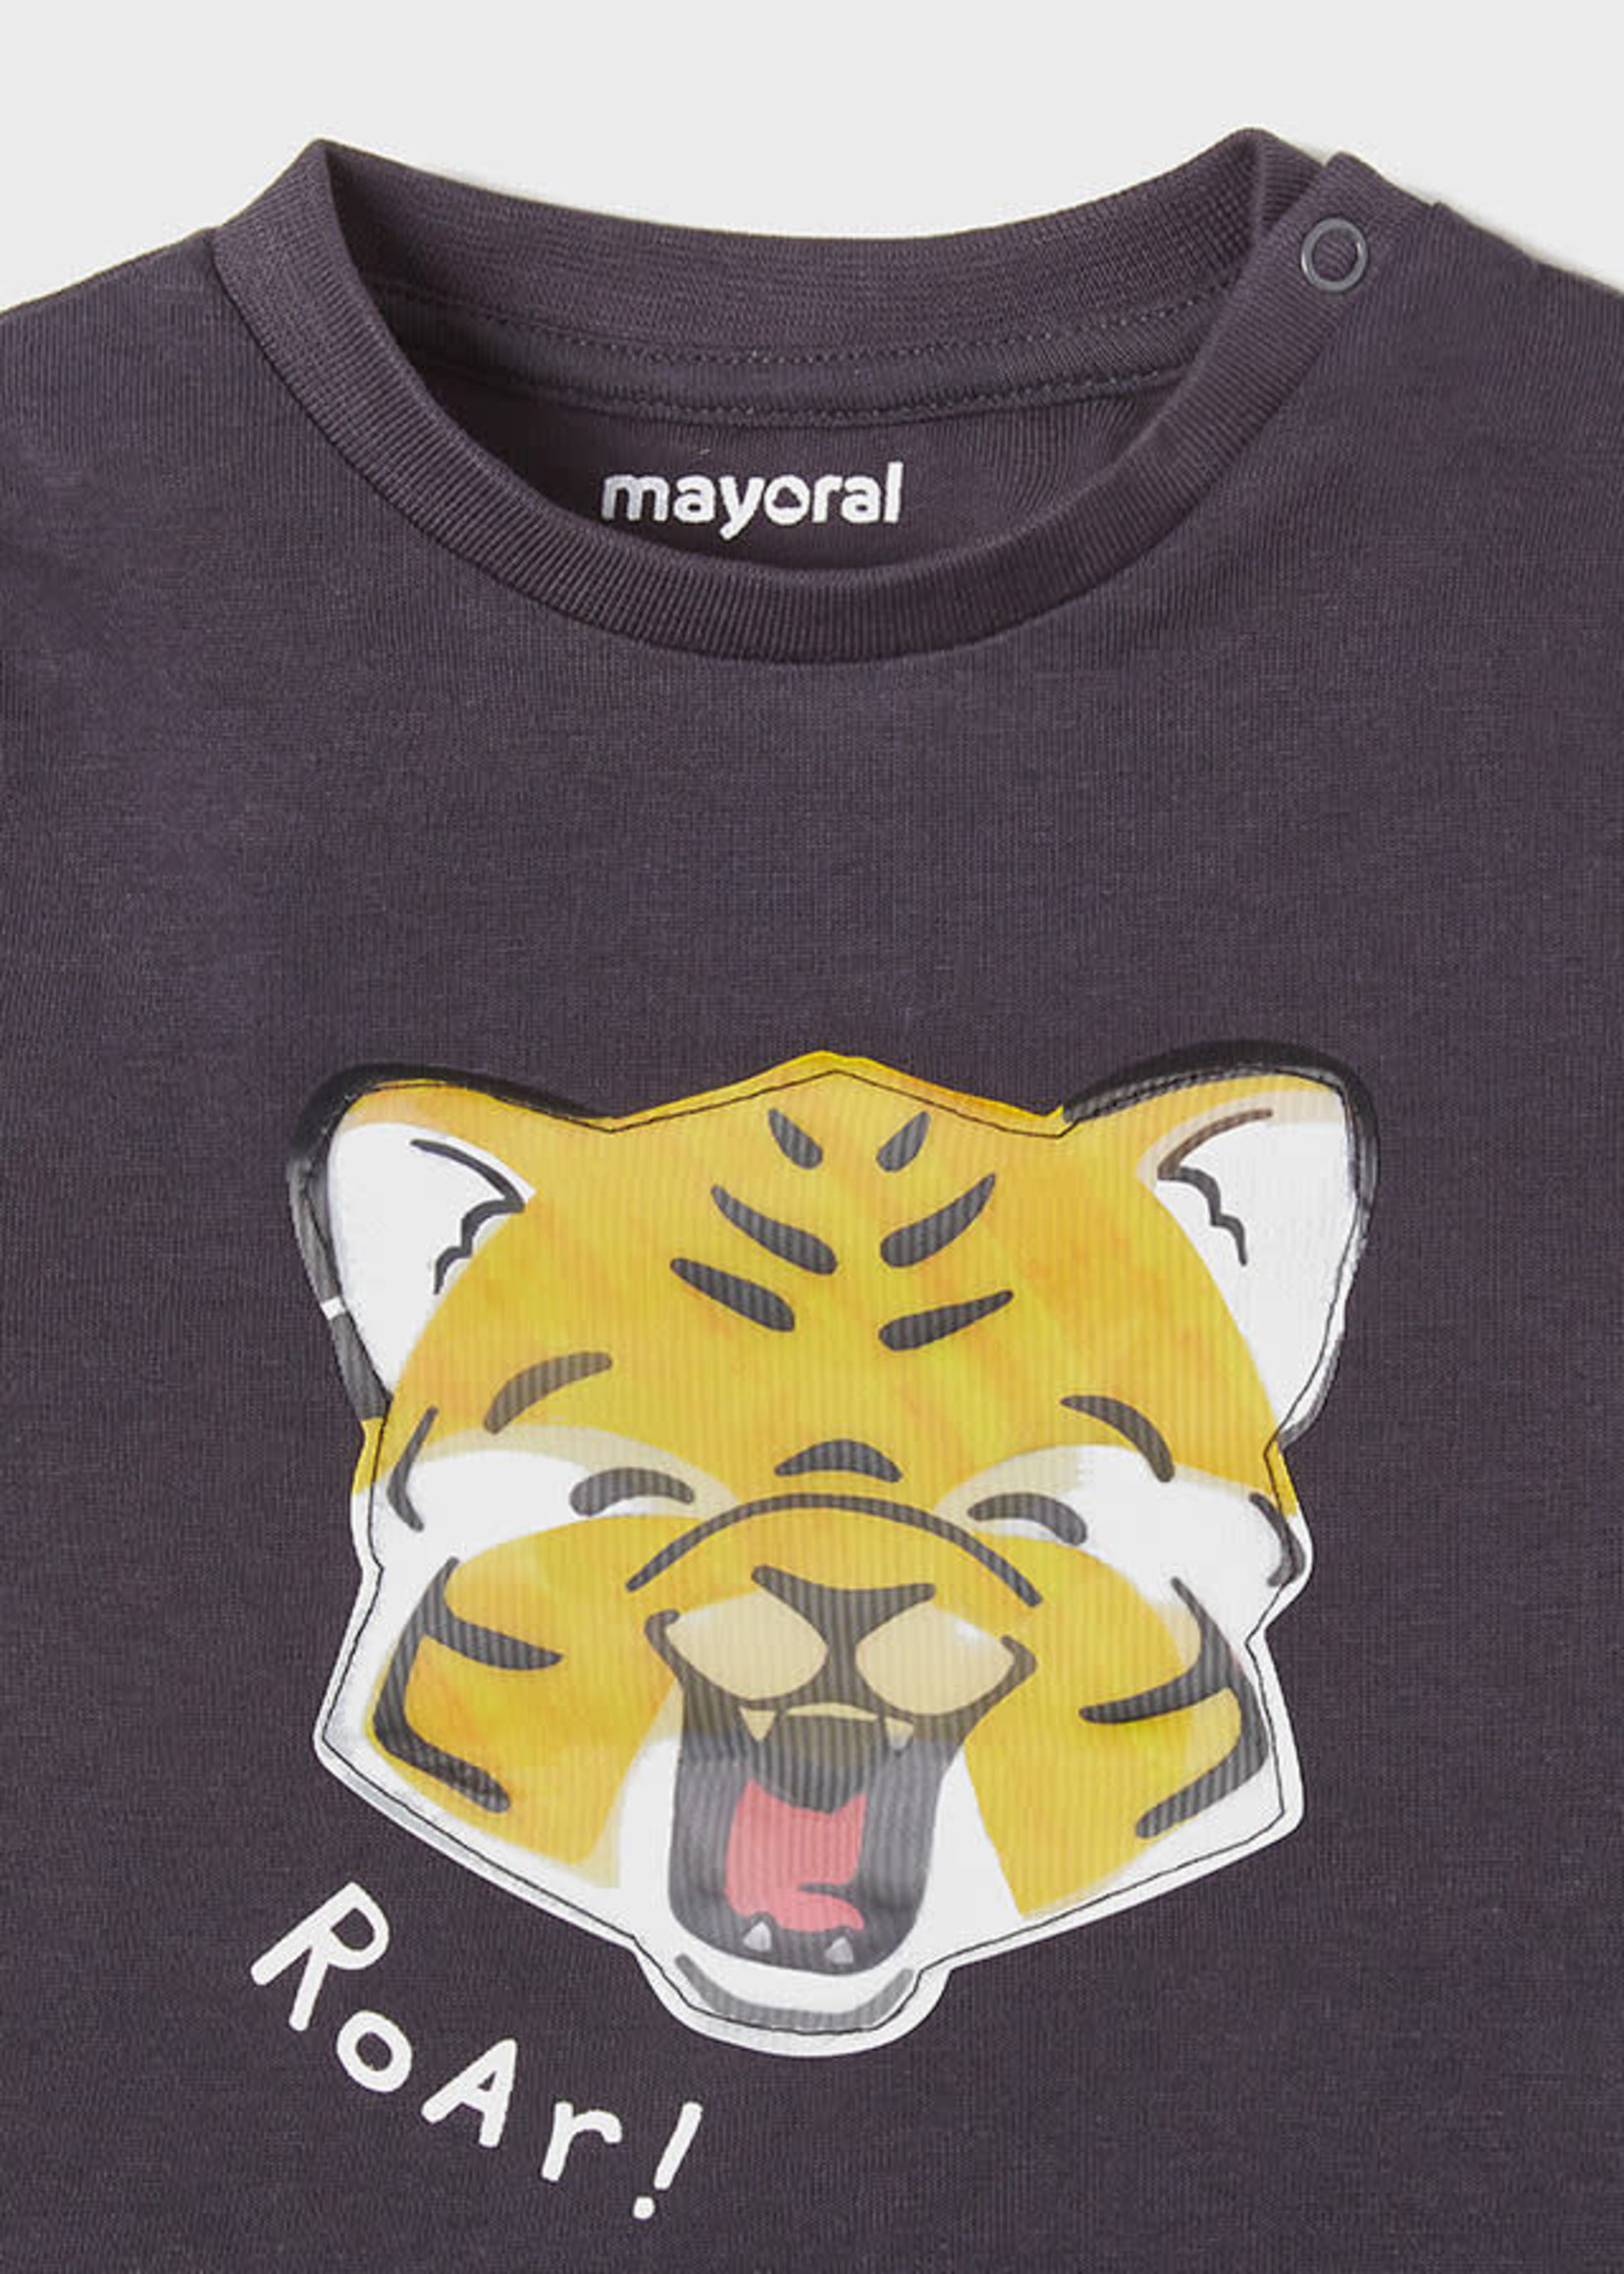 Mayoral Mayoral Babyboy t-shirt dark grey 'roar' - 1014